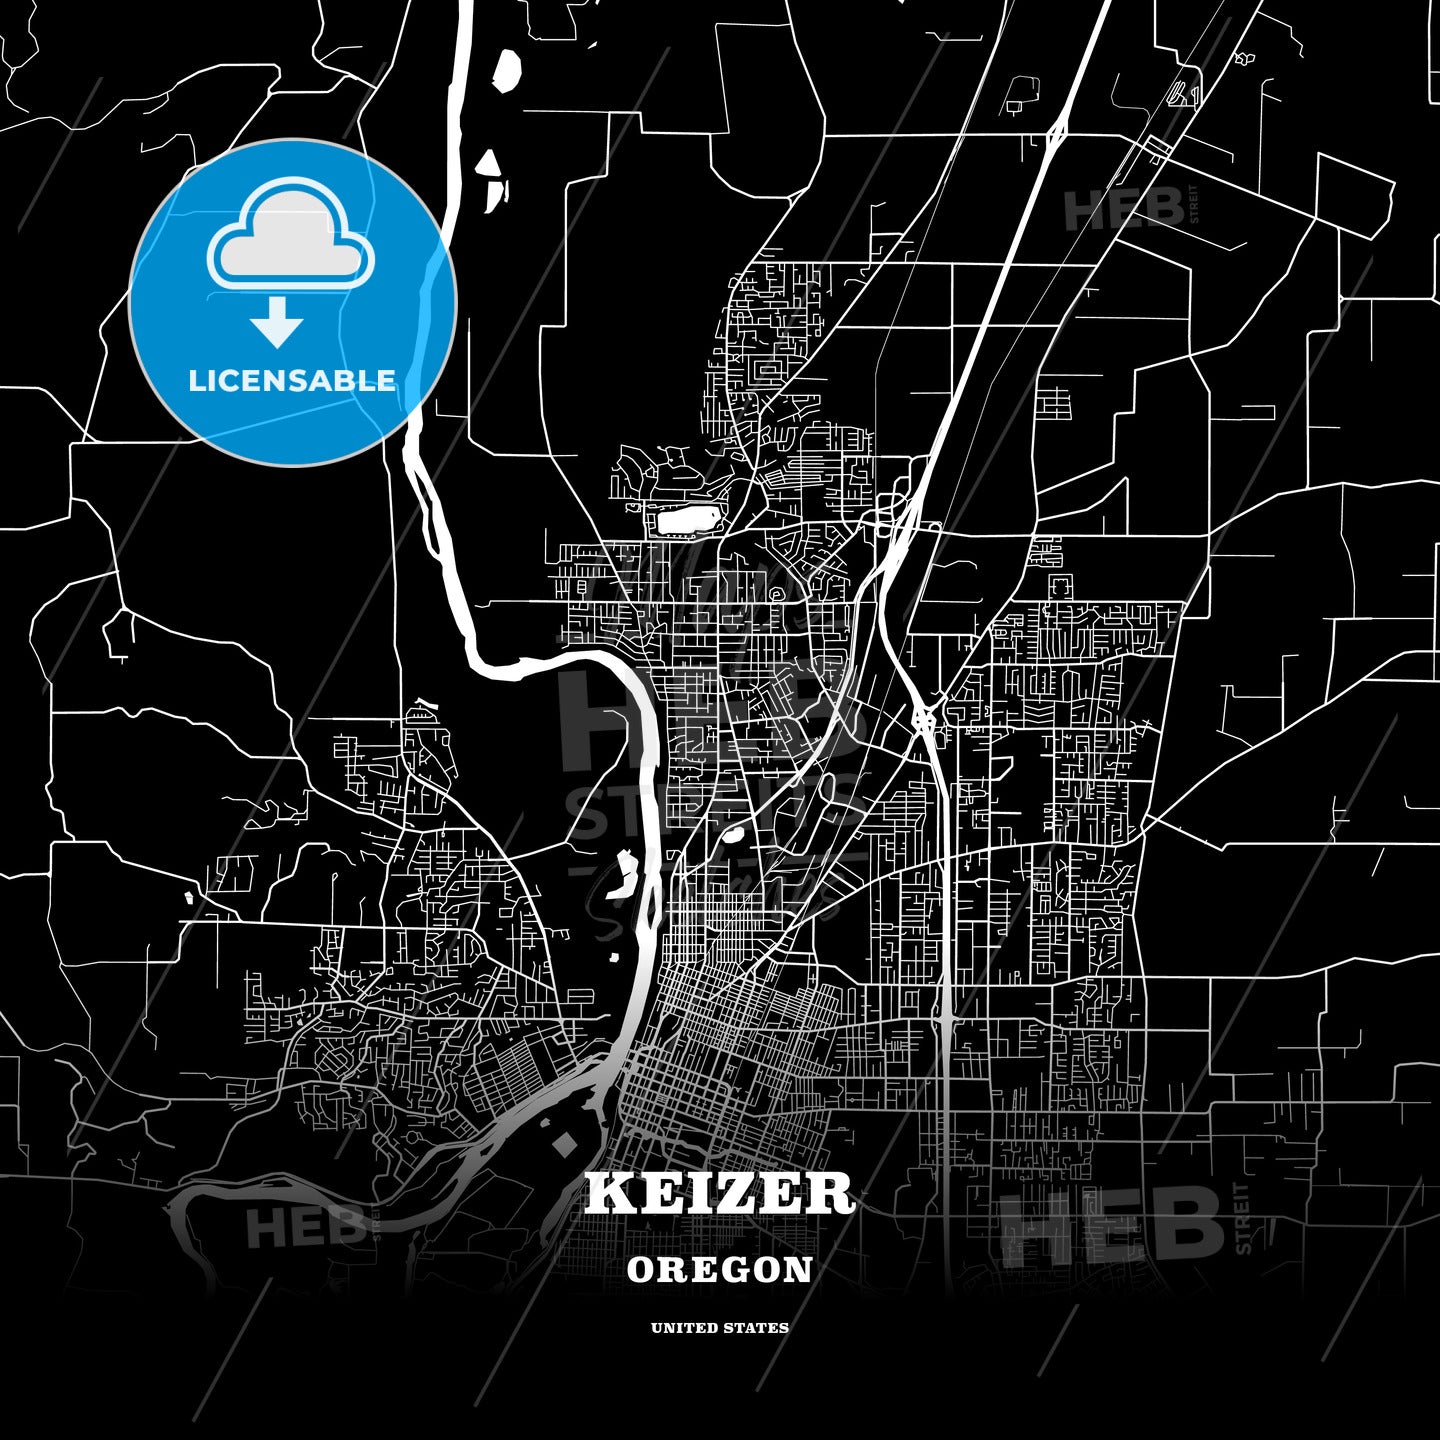 Keizer, Oregon, USA map